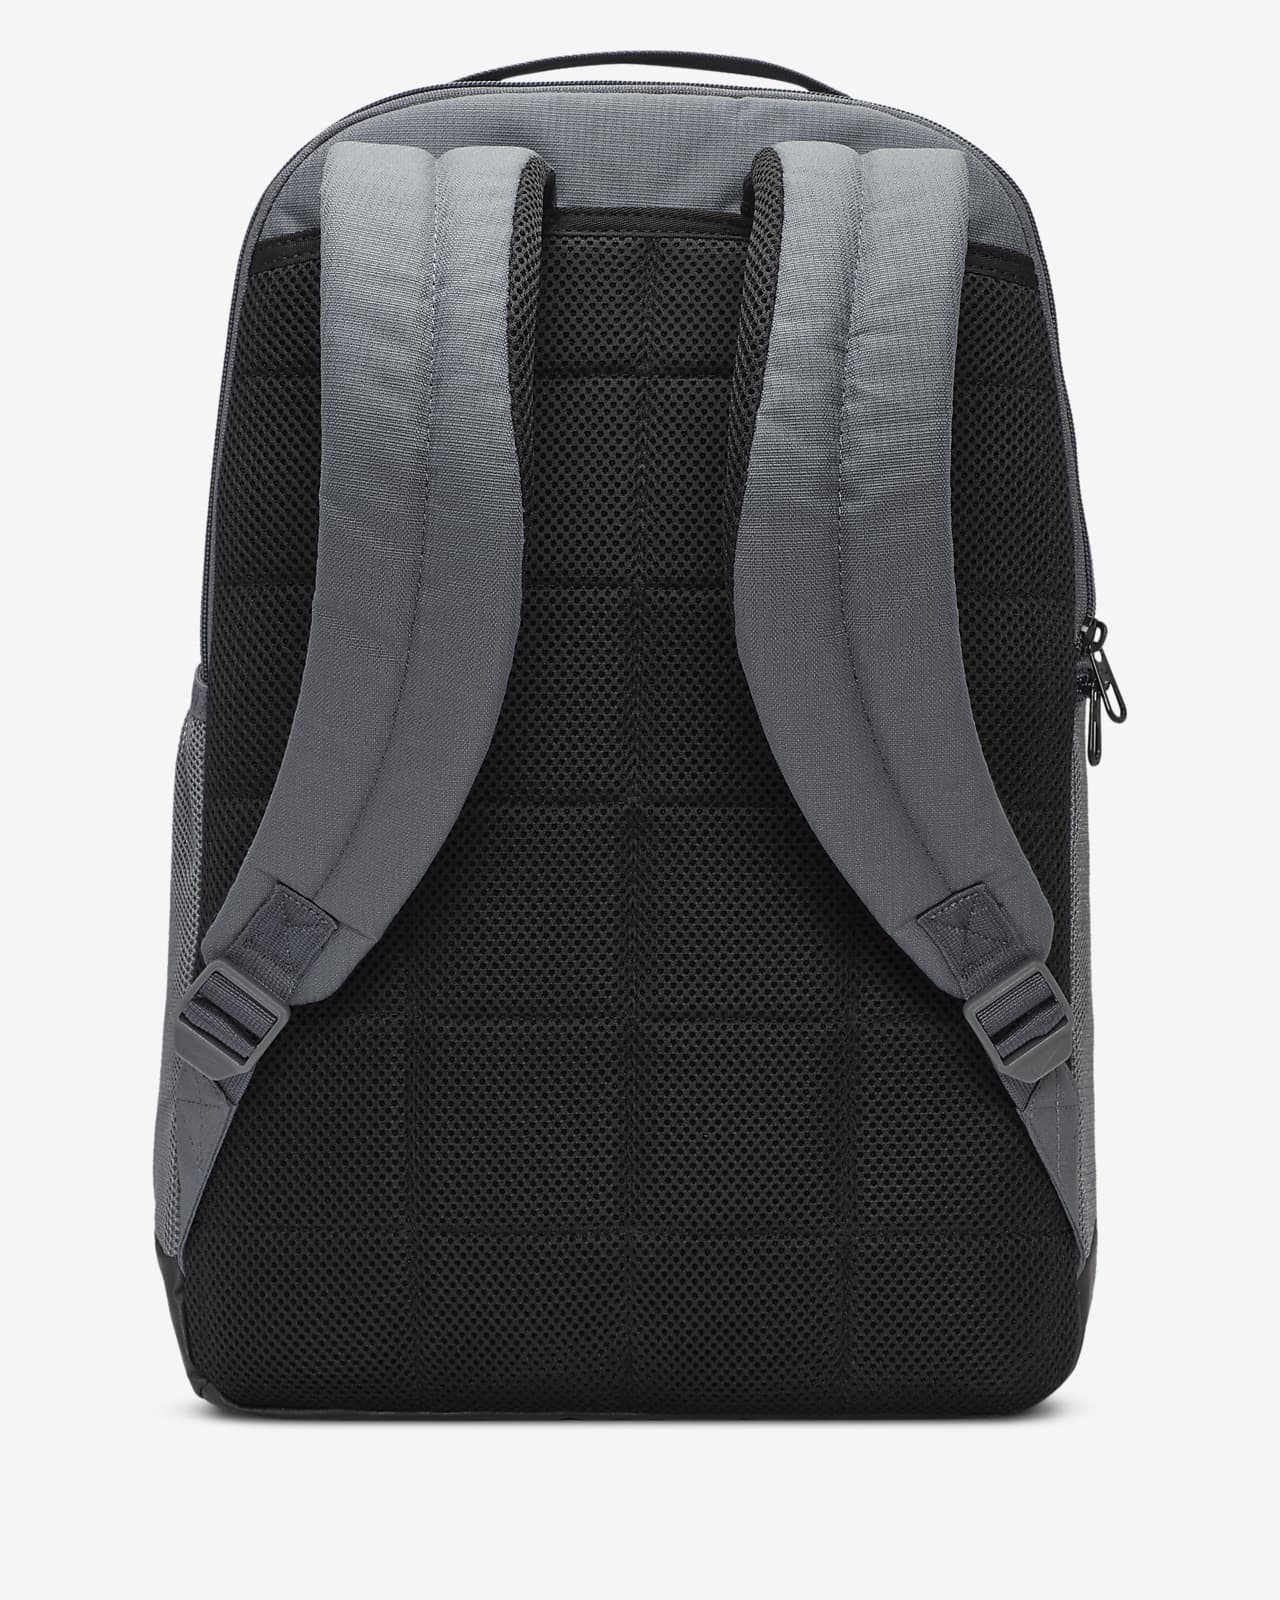 Nike Brasilia Medium Backpack (DECORATED) - NKDH7709 - IdeaStage  Promotional Products